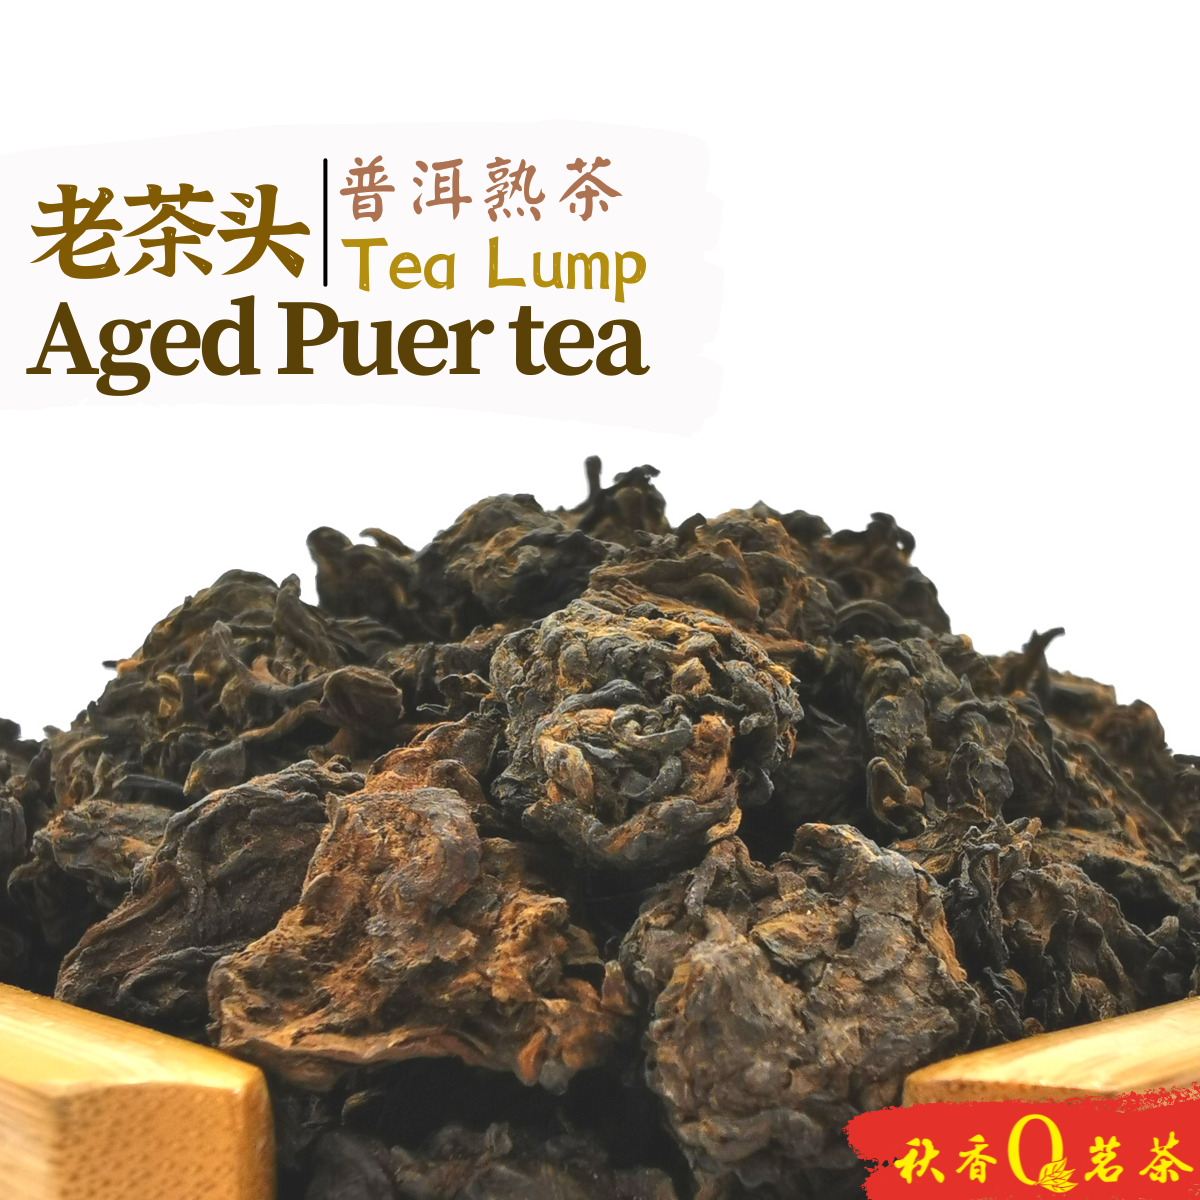 老茶头 Aged Puer tea Lump "Lao Cha Tou" (2018) (250g)｜【普洱熟茶 Ripe Puer tea】